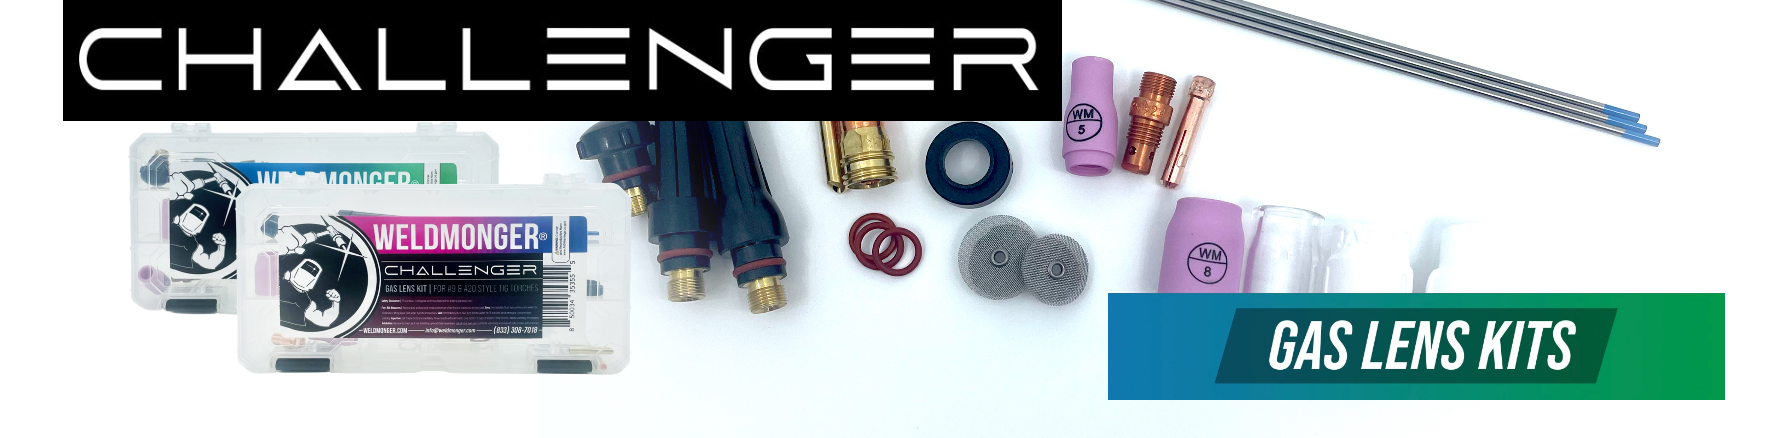 NEW! Weldmonger Challenger TIG Kit